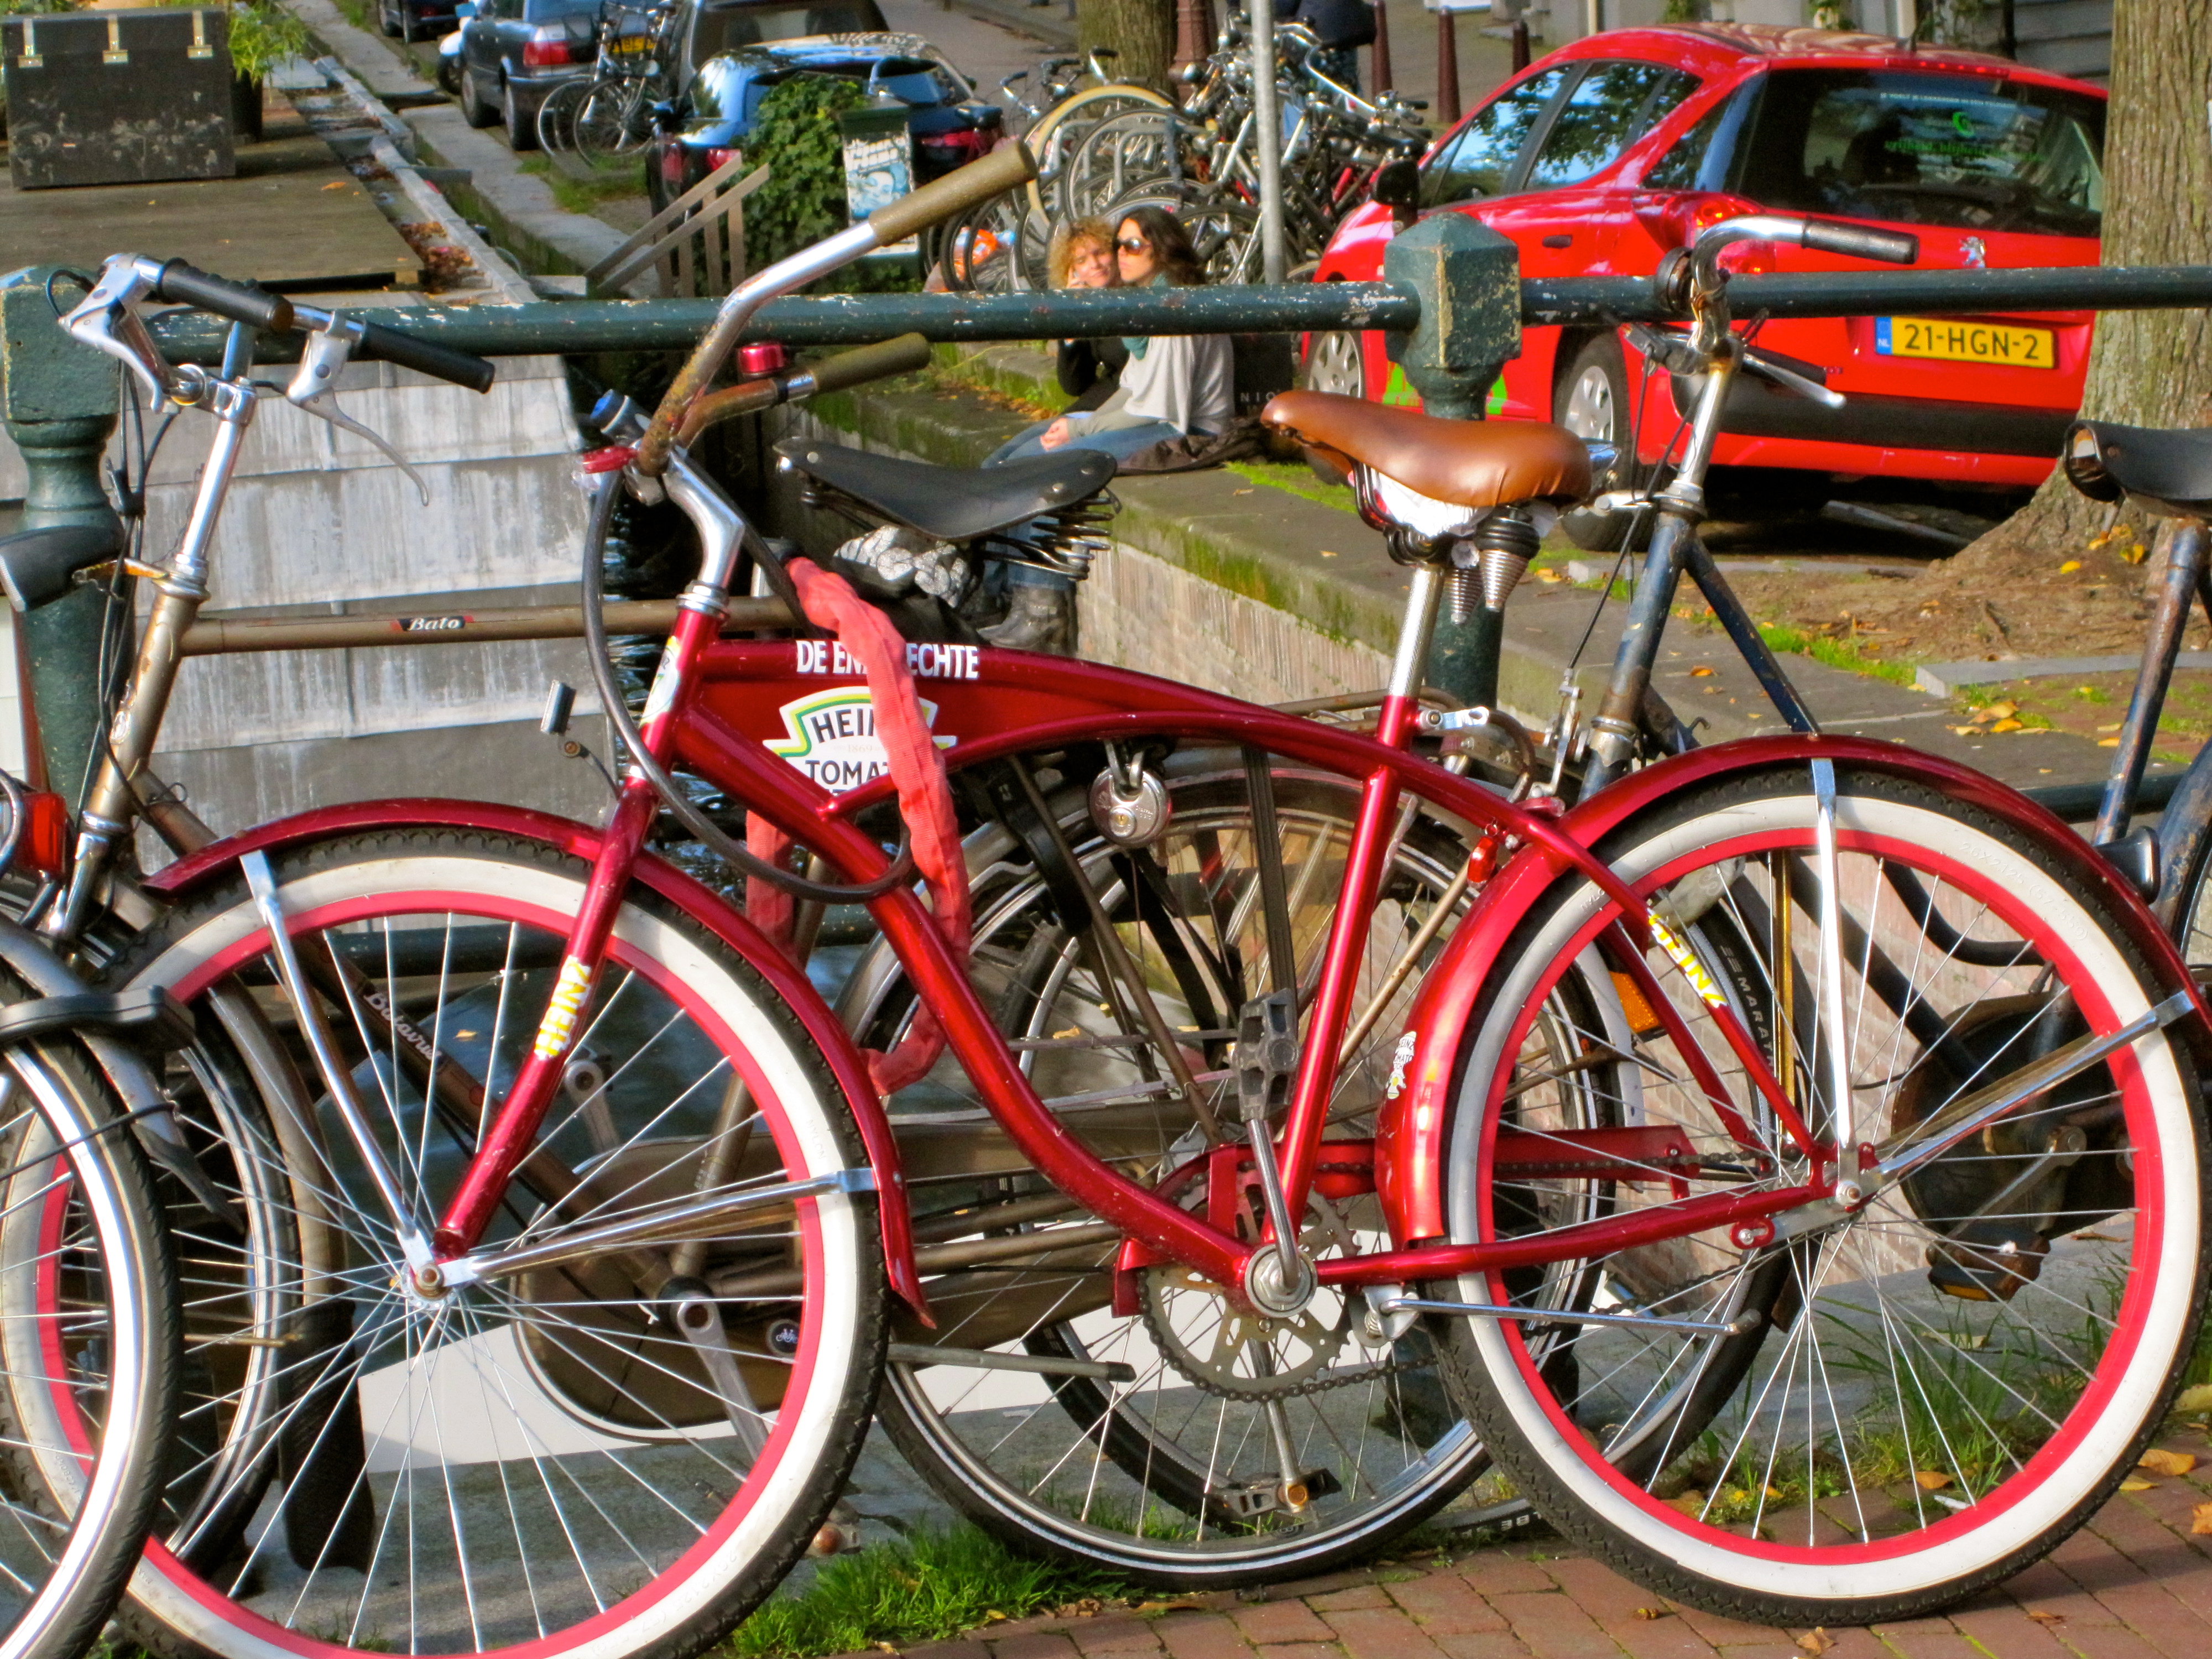 Ketchup cruiser bicycle